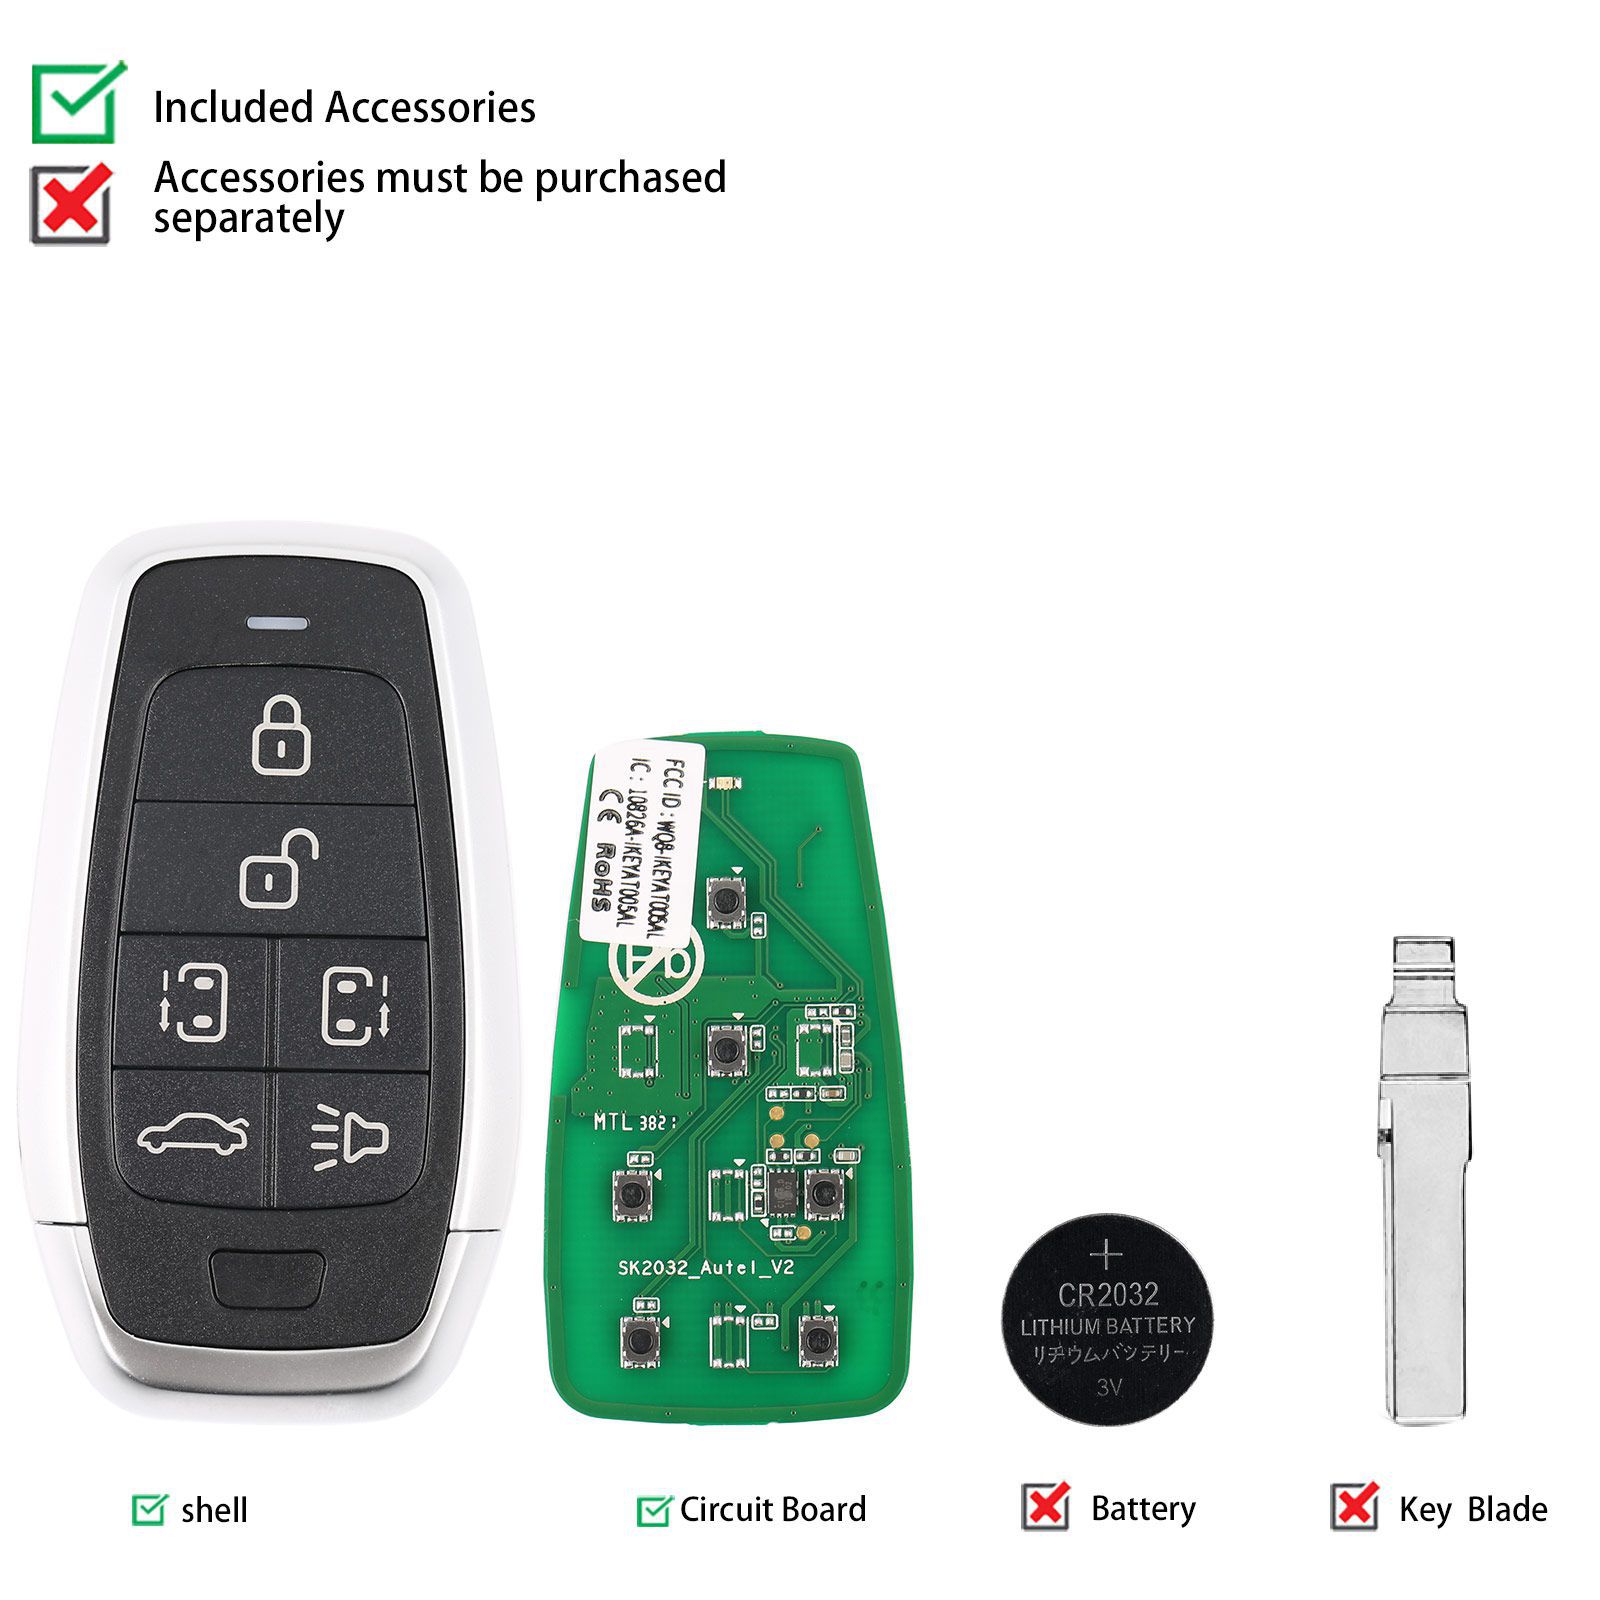 AUTEL IKEYAT006BL 6 Tasten Unabhängige Universal Smart Key 5pcs/lot